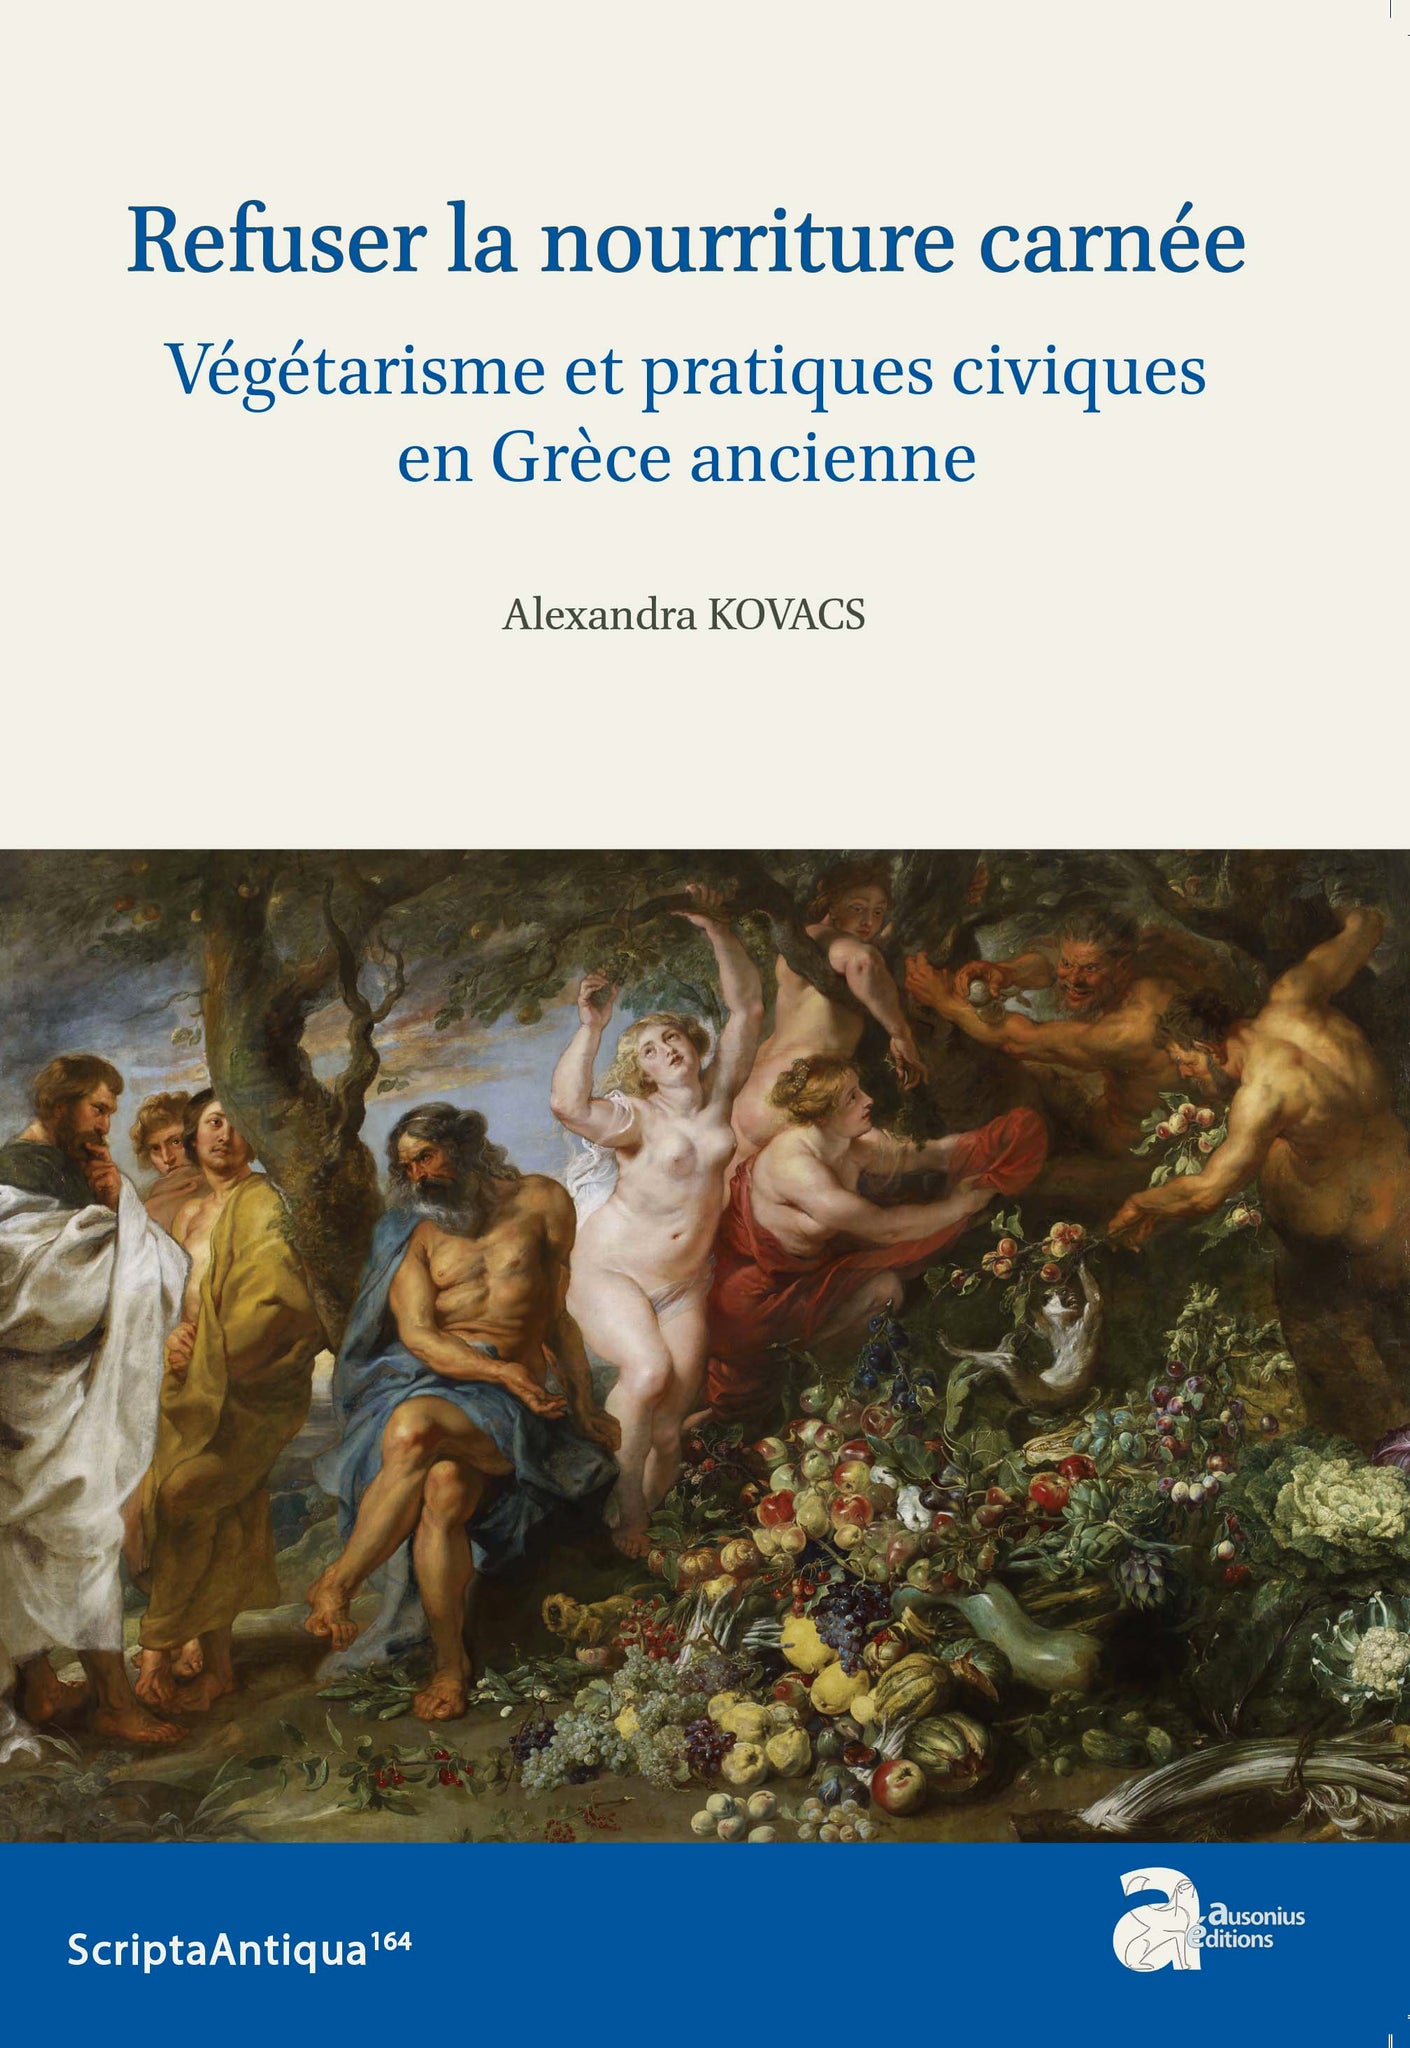 Refuser la nourriture carnée: Végétarisme et pratiques civiques en Grèce ancienne. ScriptaAntiqua164.